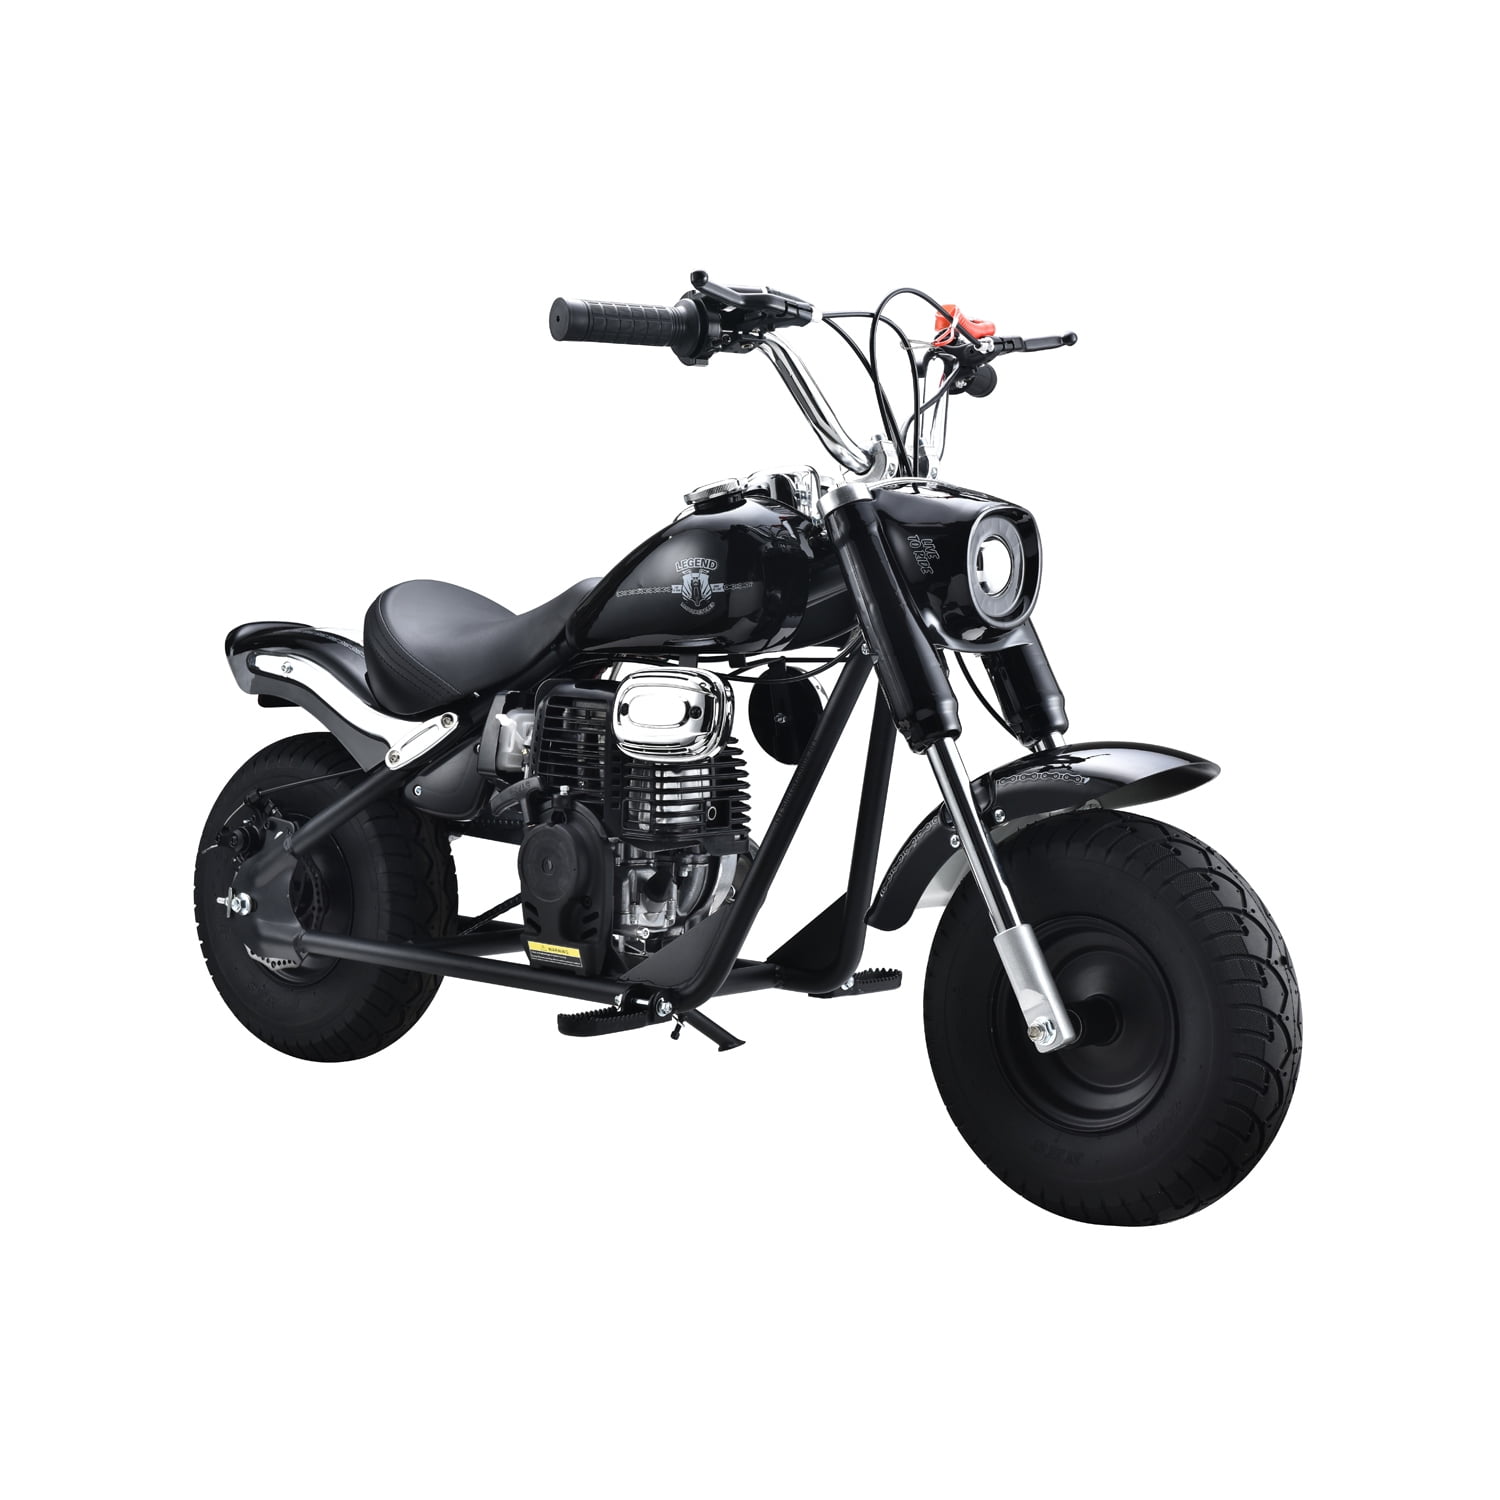 HOVER HEART Gas Mini Chopper Bike, DB004 Model 49.4 CC 2-Stroke Dirt Bike  with Big Headlight, Premiu…See more HOVER HEART Gas Mini Chopper Bike,  DB004